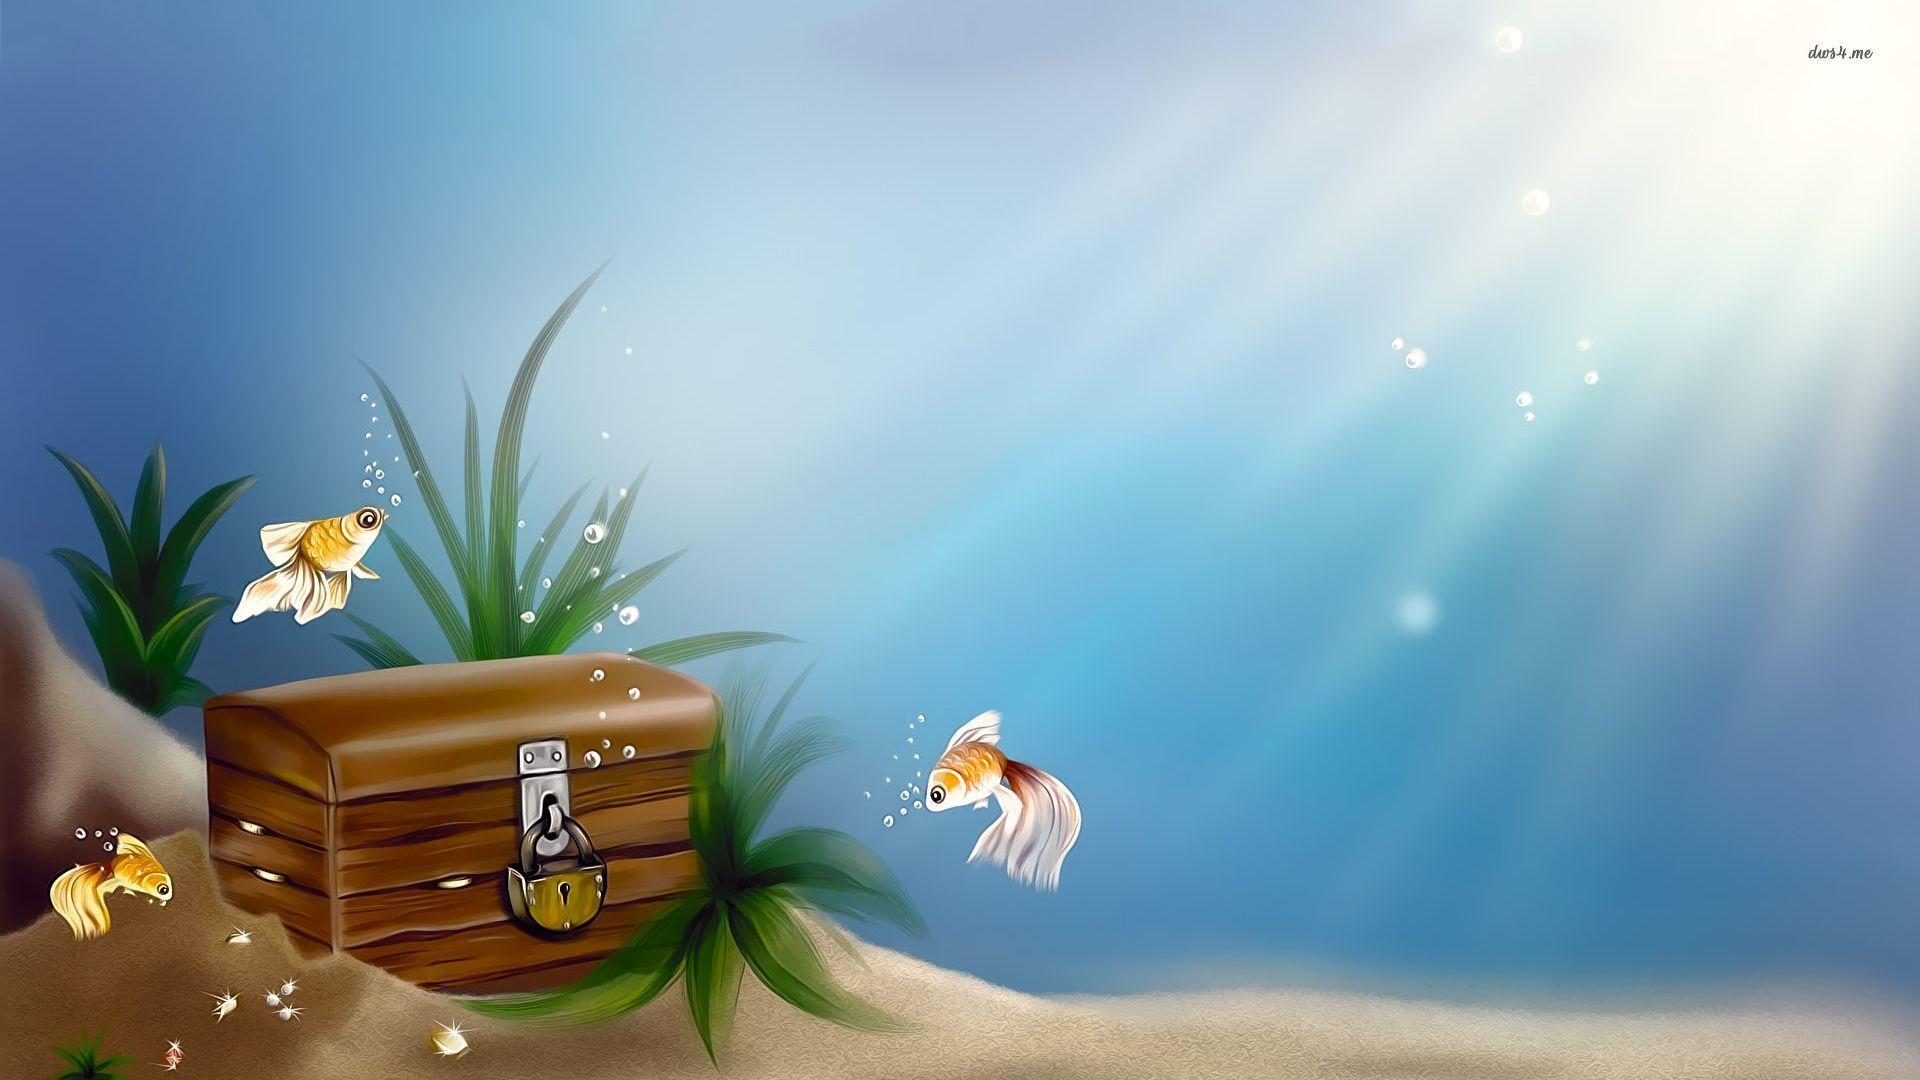 تصویر کارتونی صندوقچه گنج زیر آبی به سبک داستانی سرگرم کننده